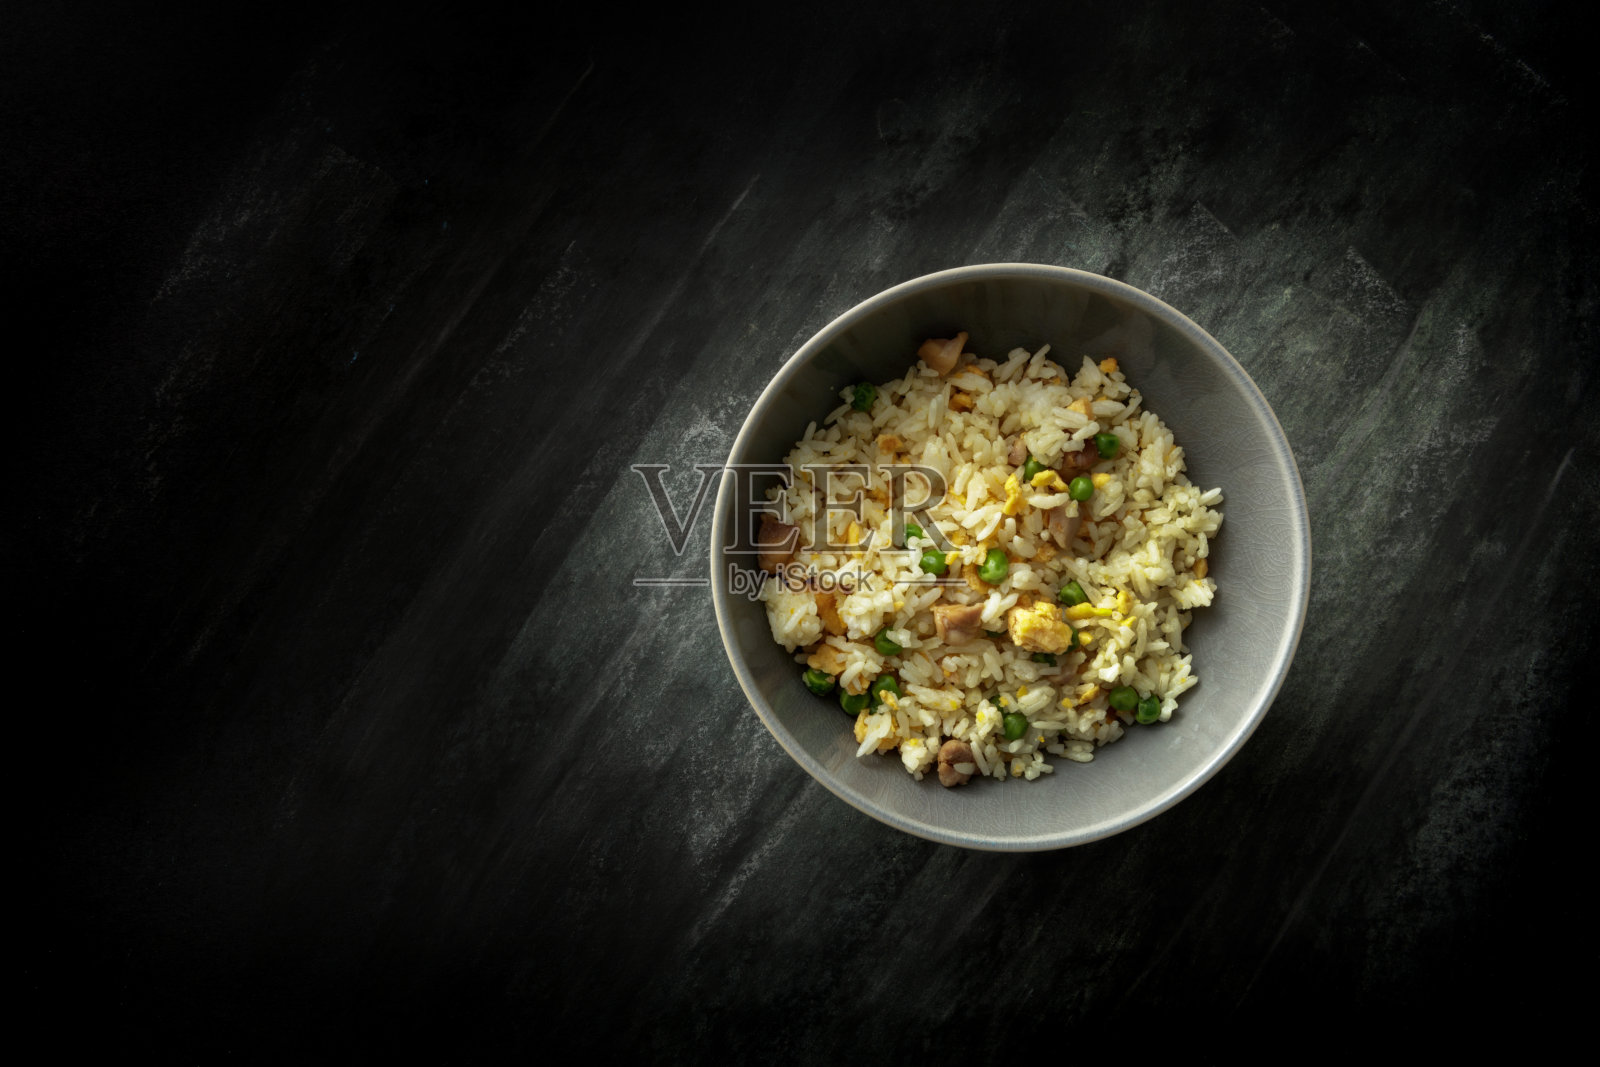 亚洲食物:炒饭静物照片摄影图片